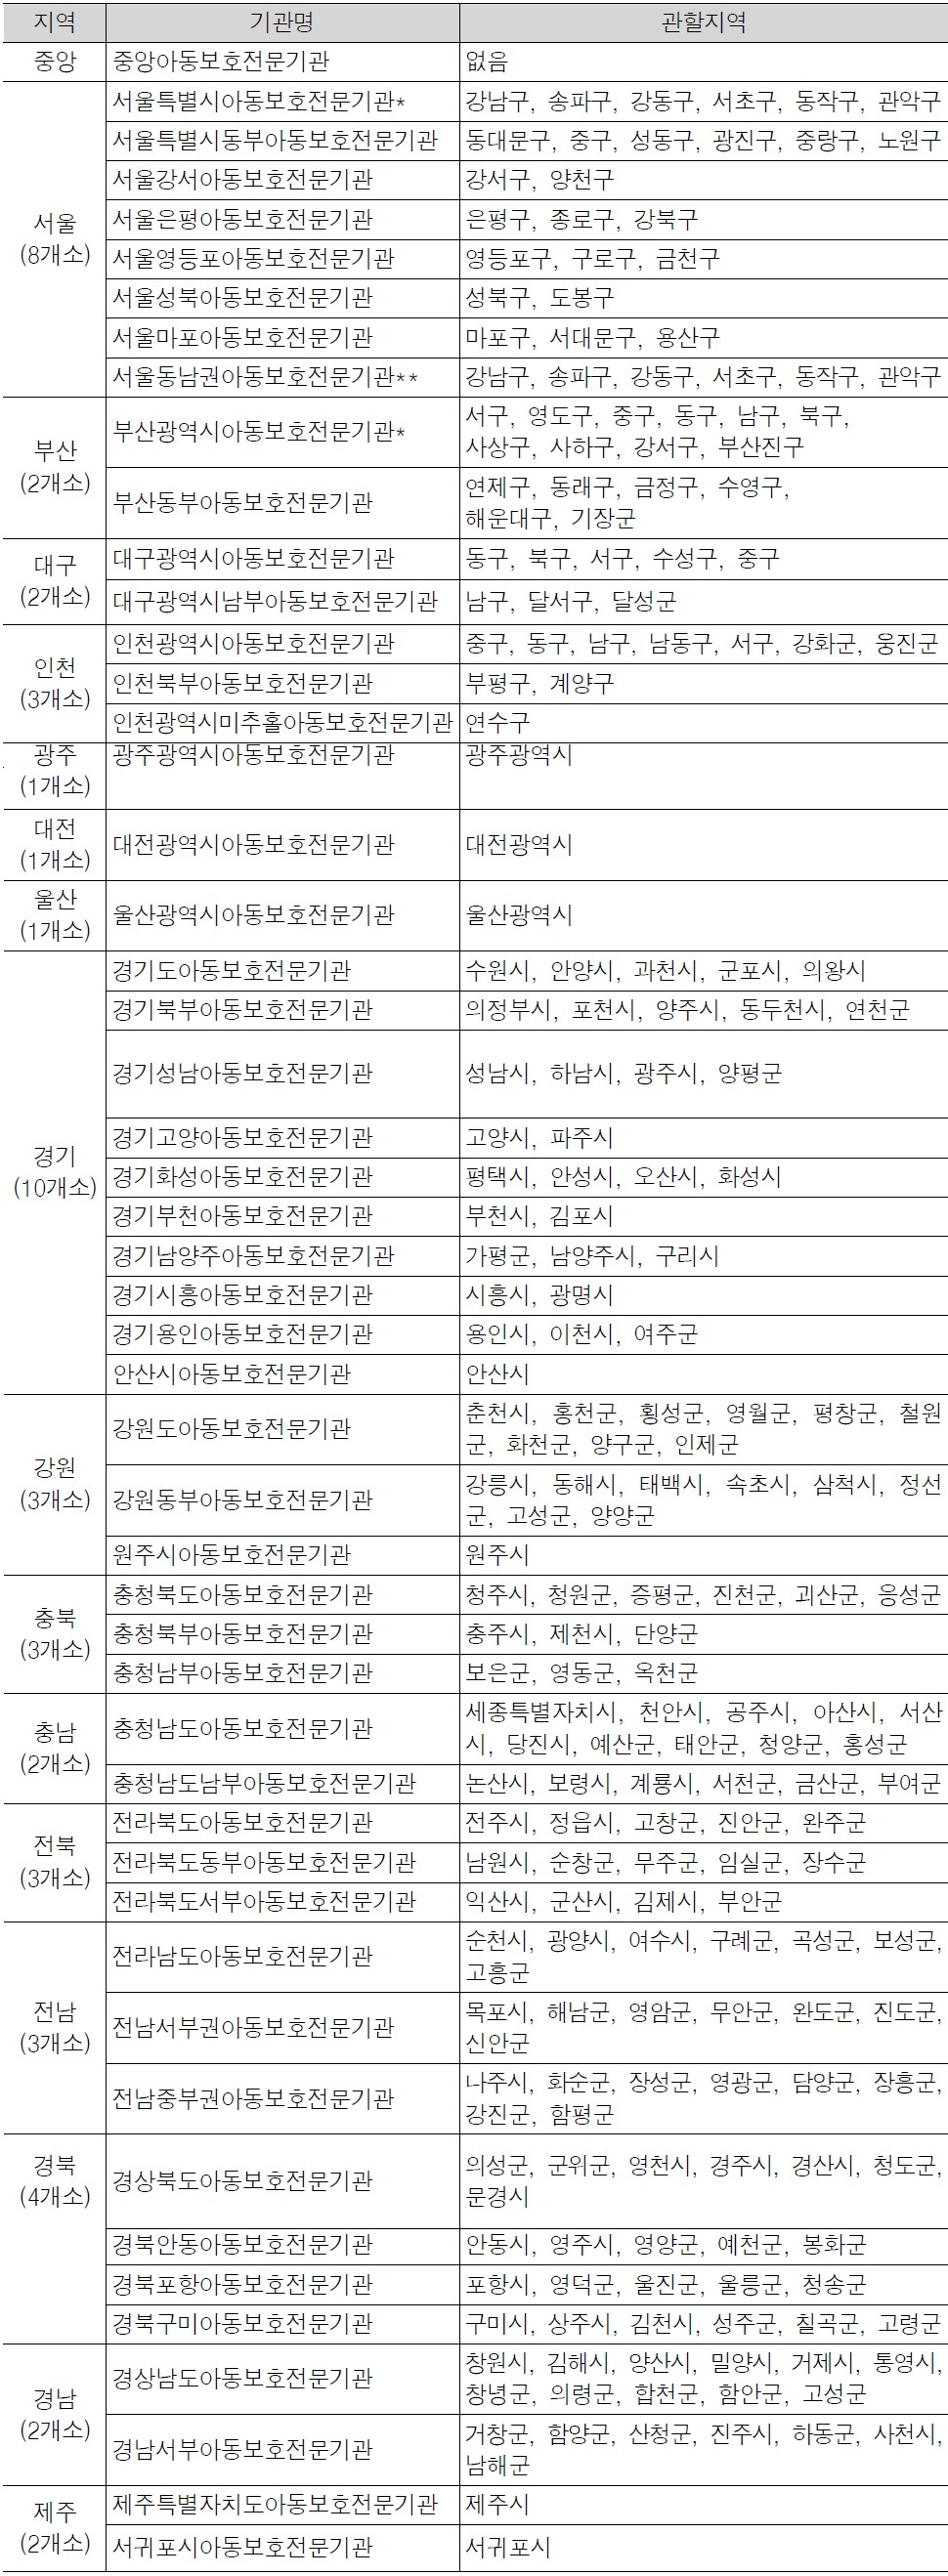 전국 아동보호전문기관 설치 현황 (2014년 4월 기준, 51개소)